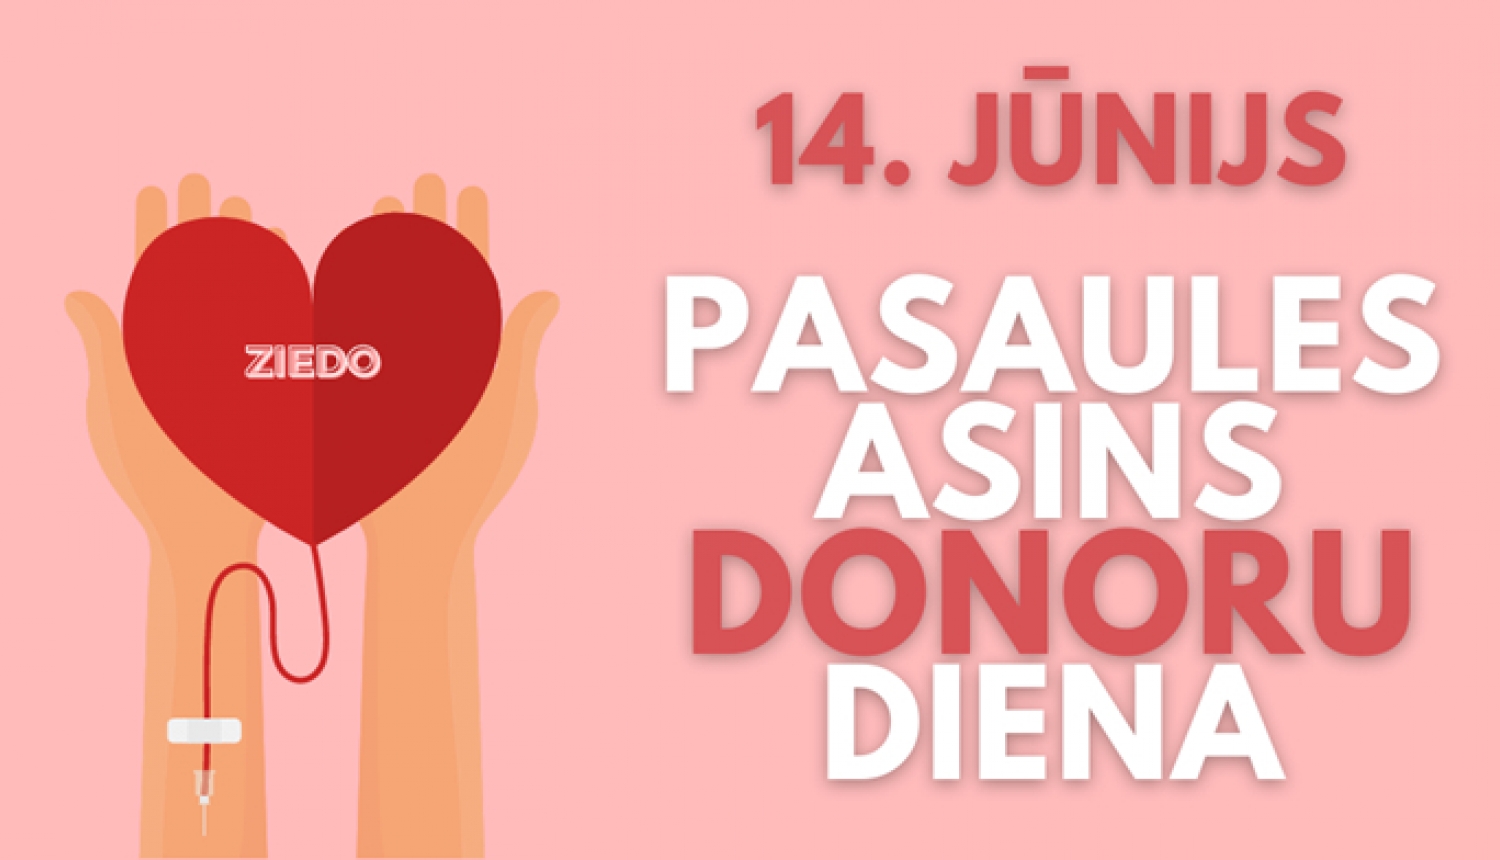 Zīmējums - rokas ar atvērtām plaukstām tur sirdi ar uzrakstu "ziedo"; Uzraksts "14. jūnijs Pasaules asins donoru diena"